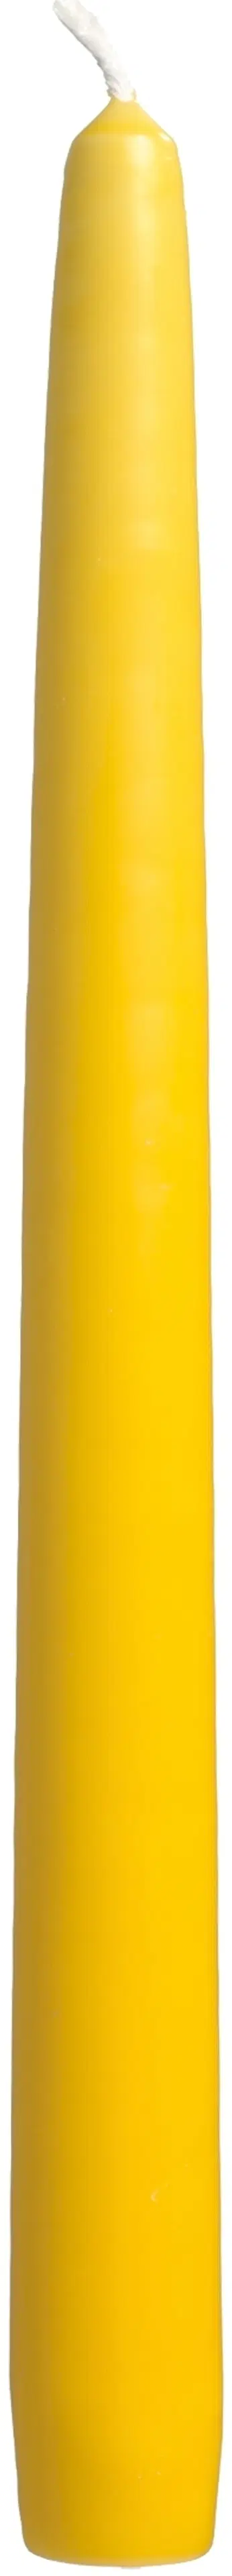 Havi antiikkikynttilä keltainen 28cm 4kpl  8 h